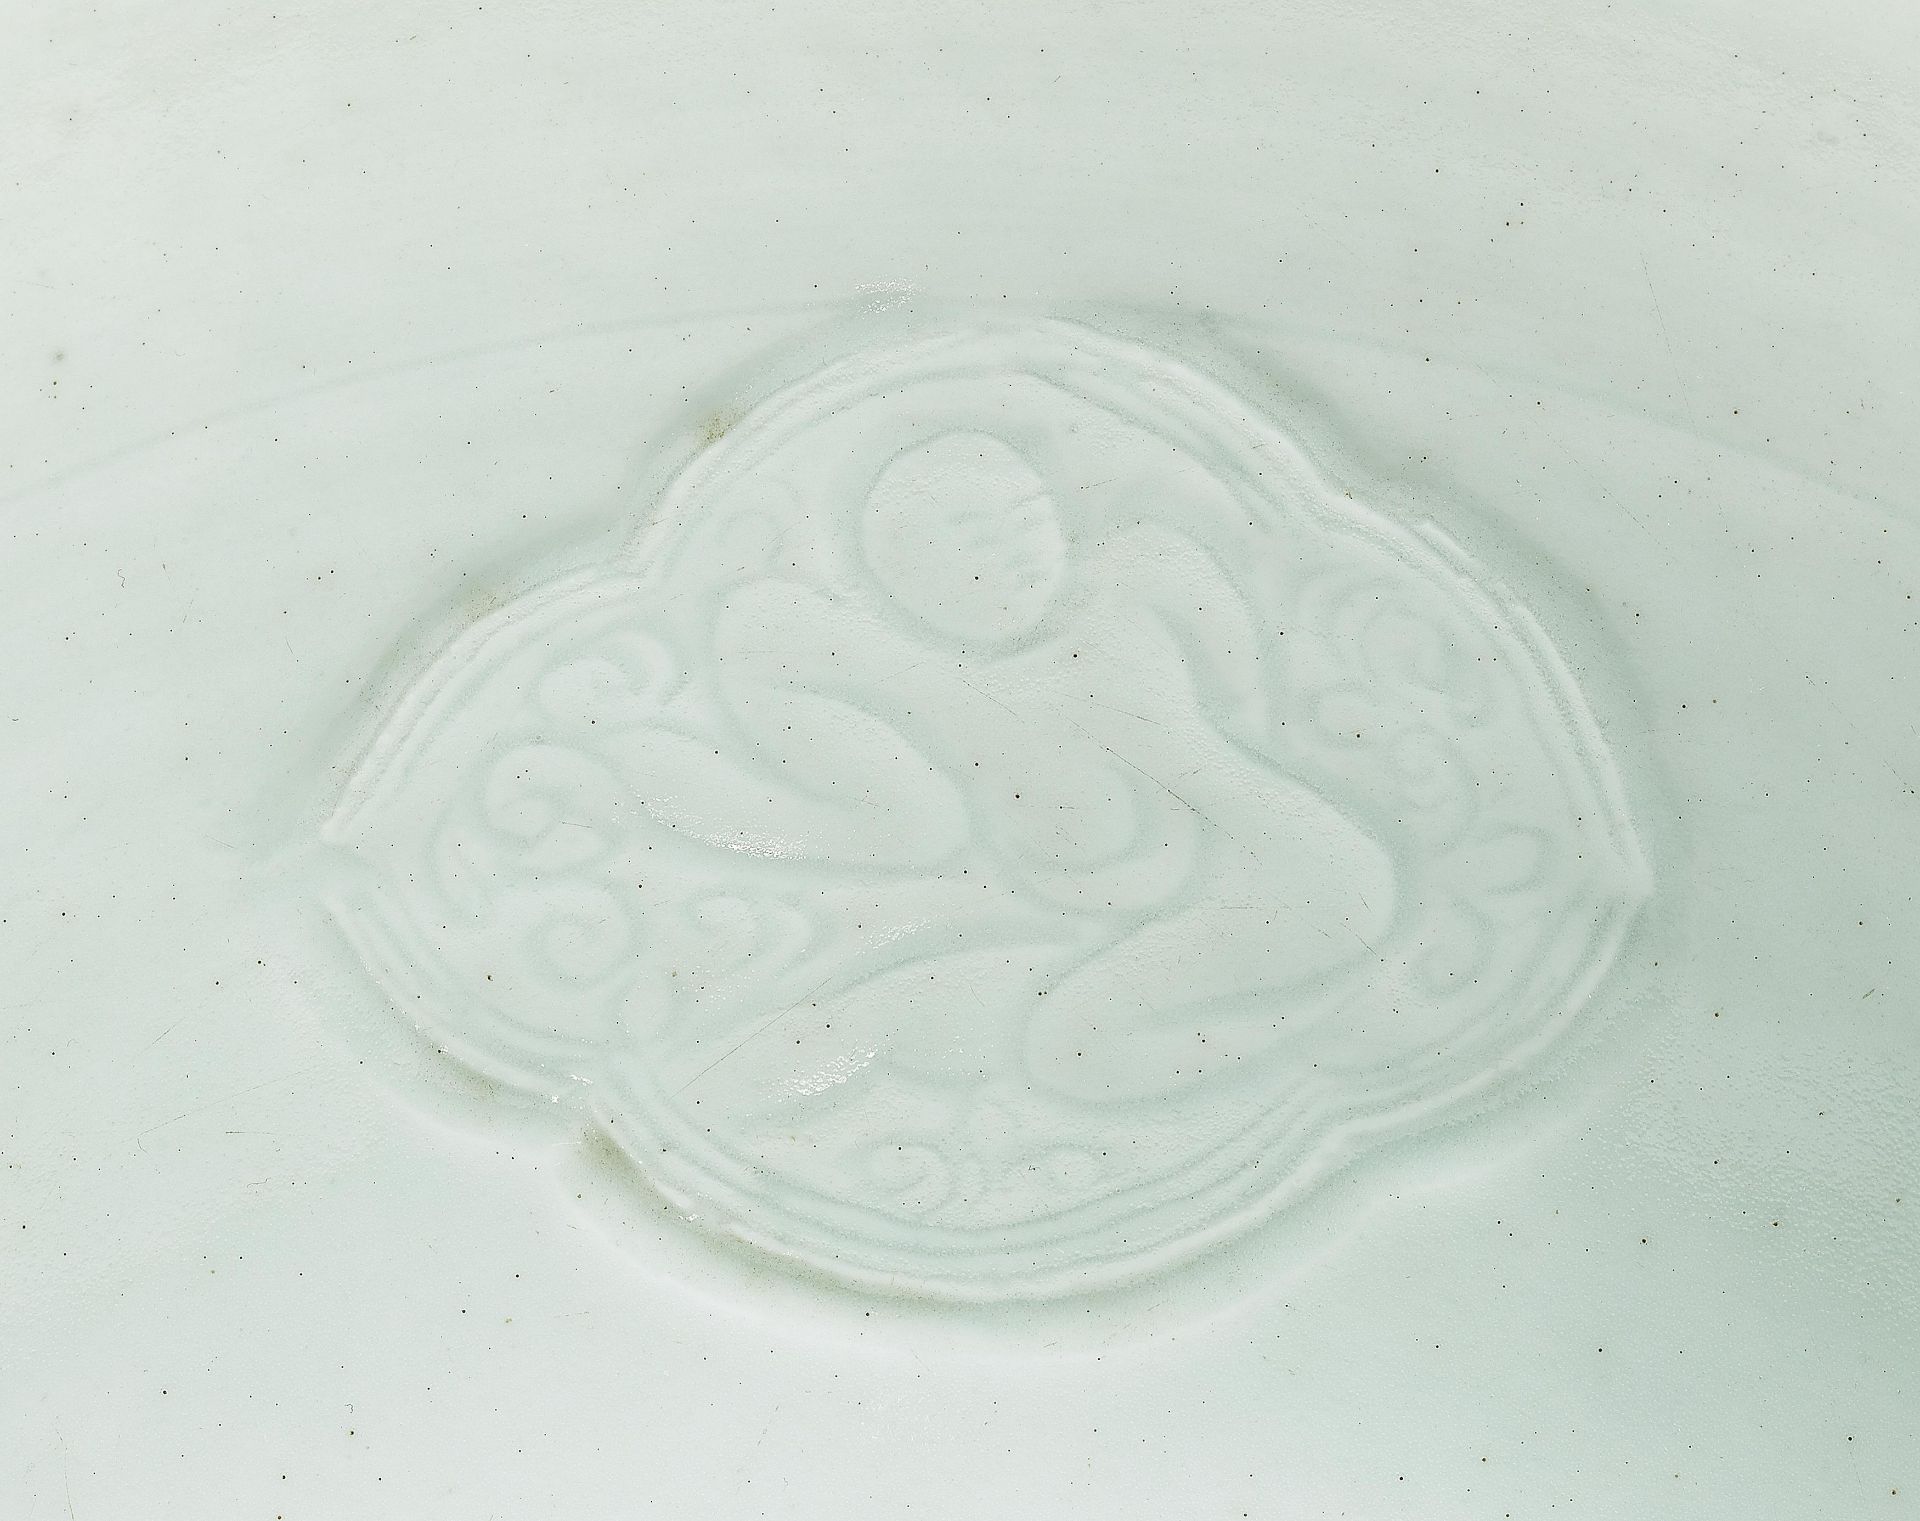 SCHALE MIT MEDAILLONS MIT KNABEN. China. 13./14. Jh. Dünn getöpfertes Porzellan mit qingbai-Glasur - Bild 2 aus 2